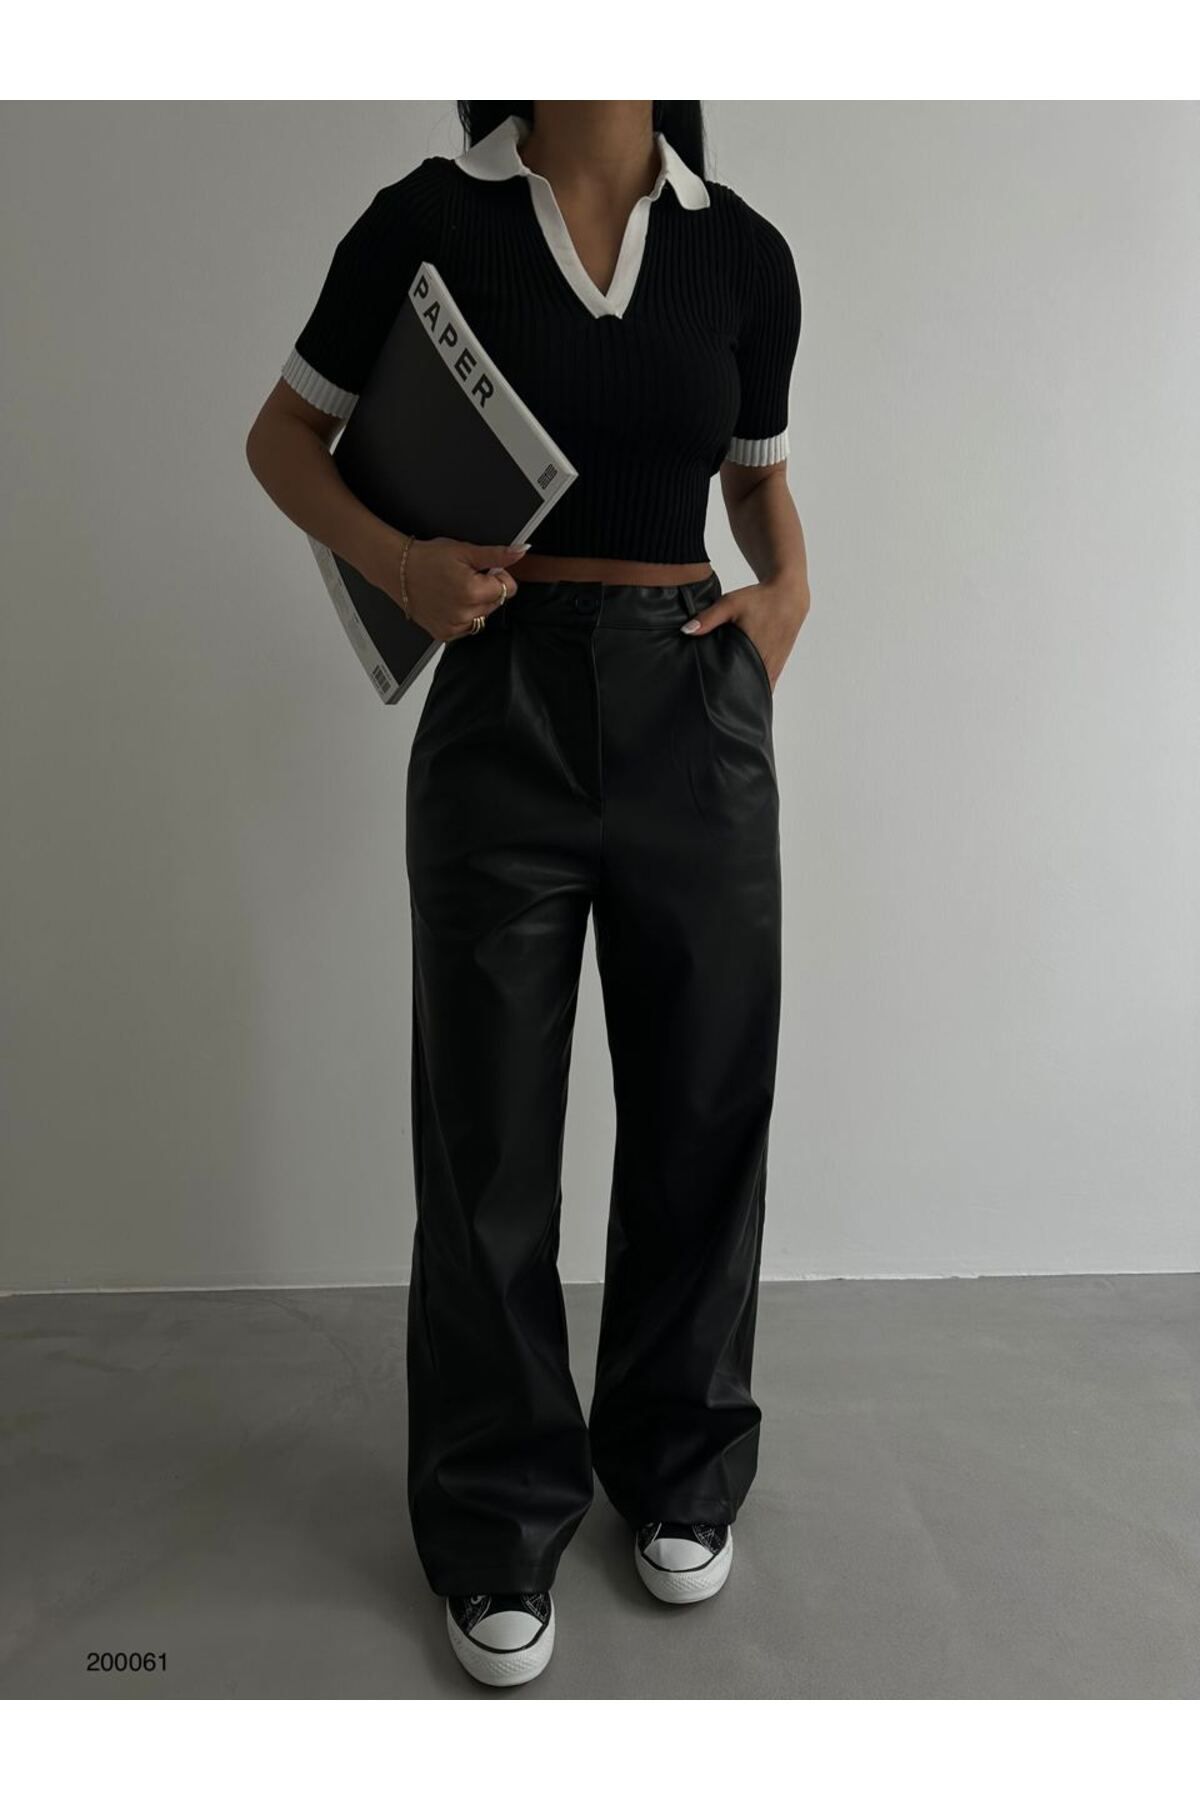 Lolliboomkids Kadın Giyim Yüksek Bel Suni Deri Siyah Renk PaLazzo Pantolon